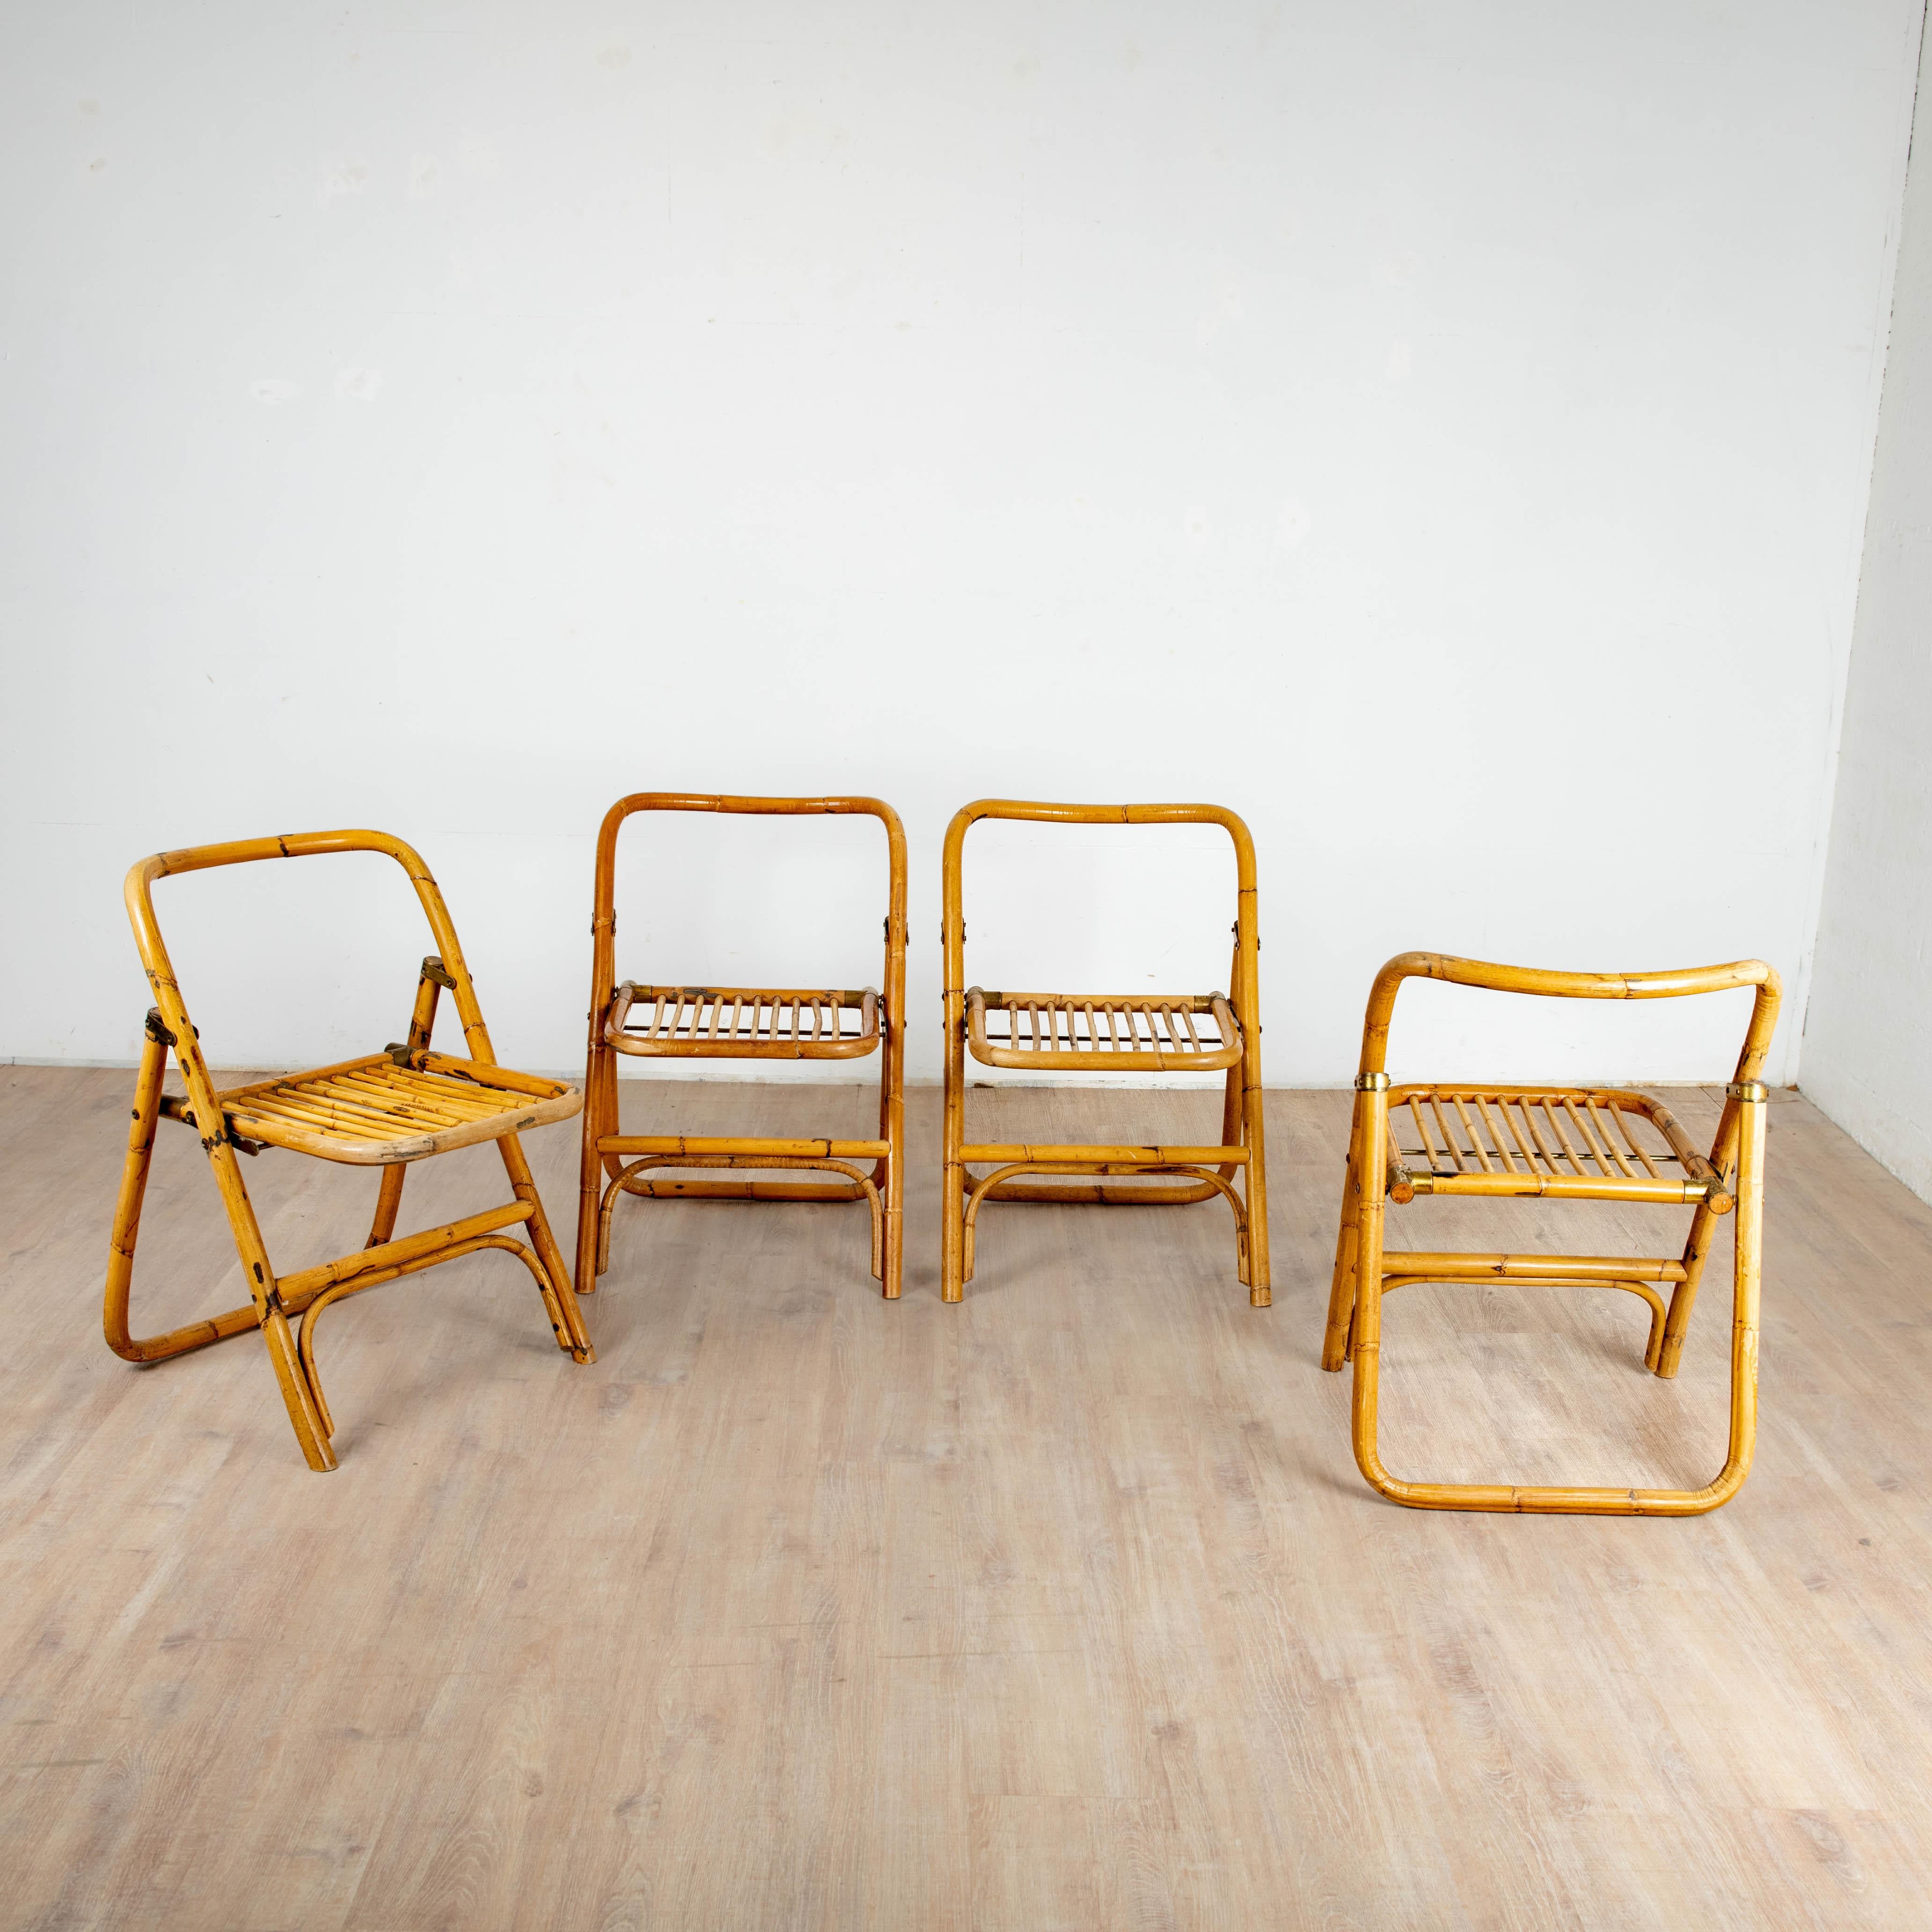 Série de 4 chaises italienne en bambou cintré, rotin et laiton belle patine travail des années 1970.
hauteur 73 cm hauteur assise 42 cm largeur 50 cm